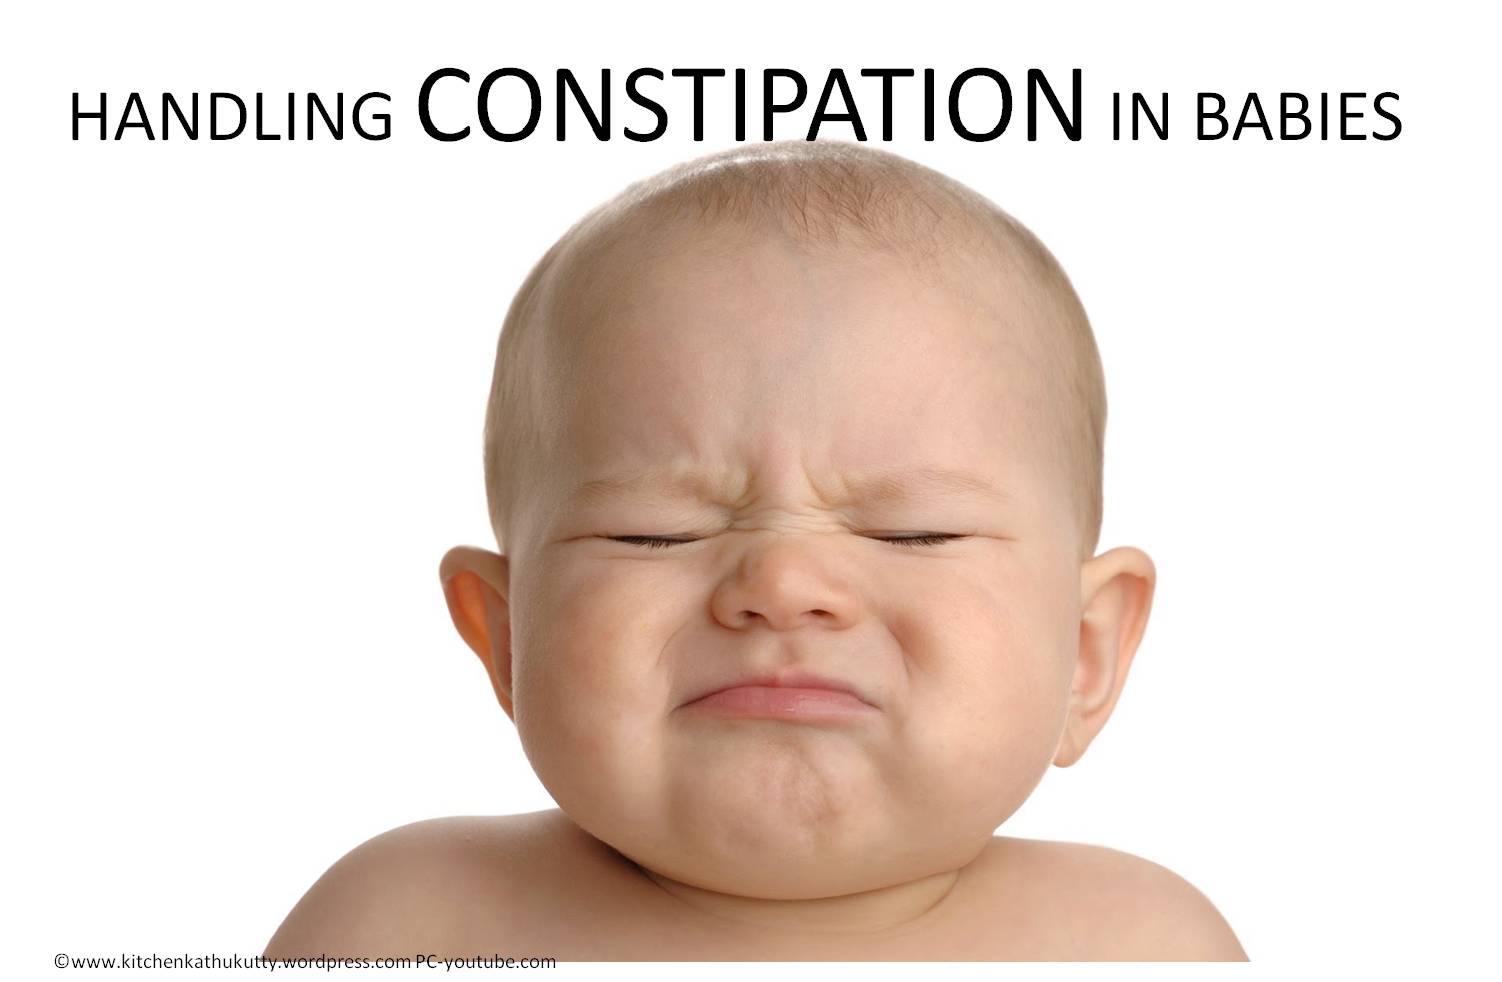 hadnling constipation in babies2.jpg